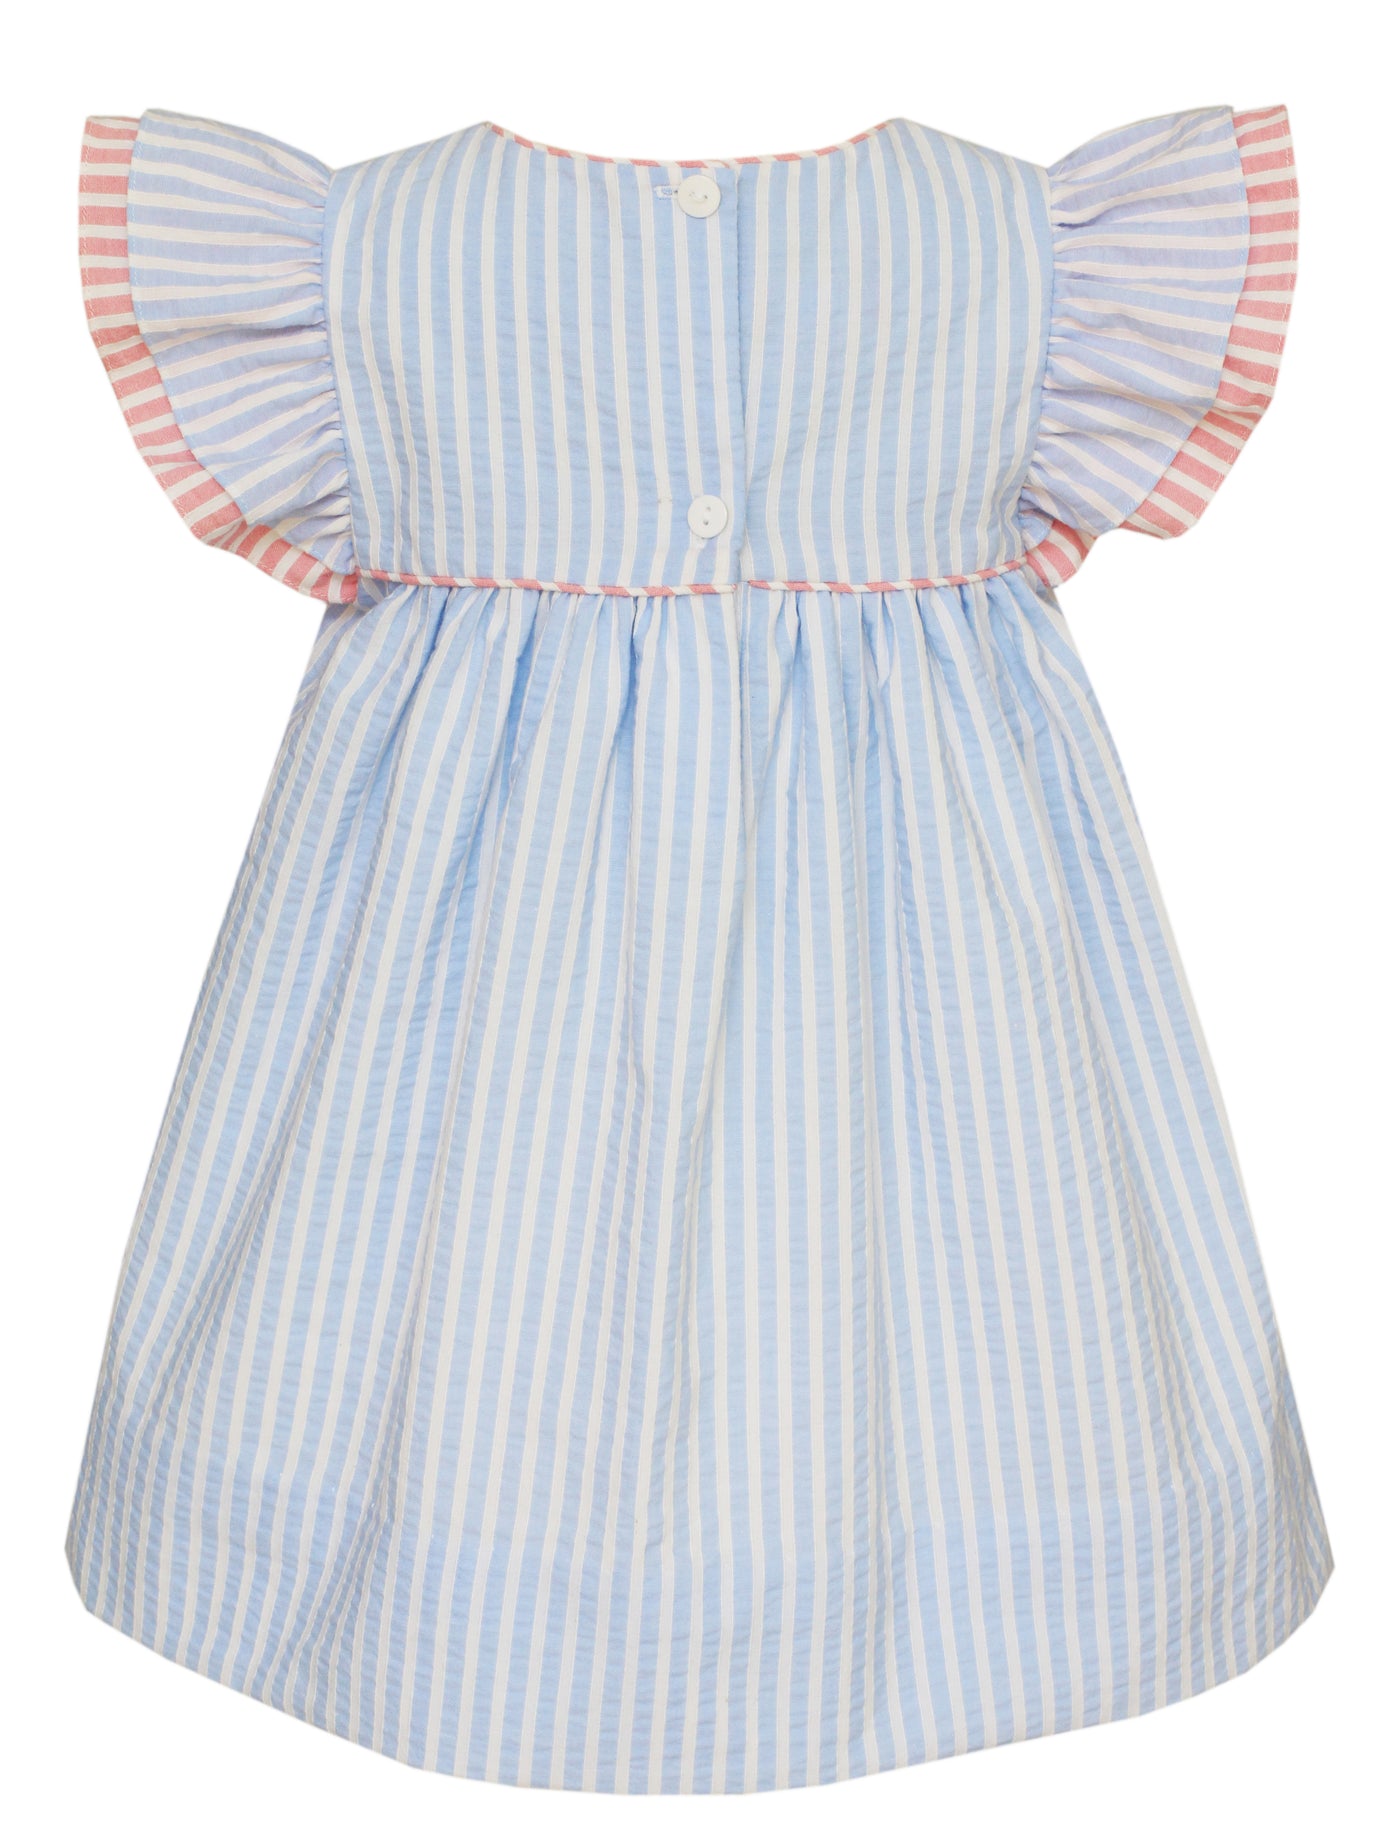 Blue & Pink Stripe Seersucker Angel Wing Dress